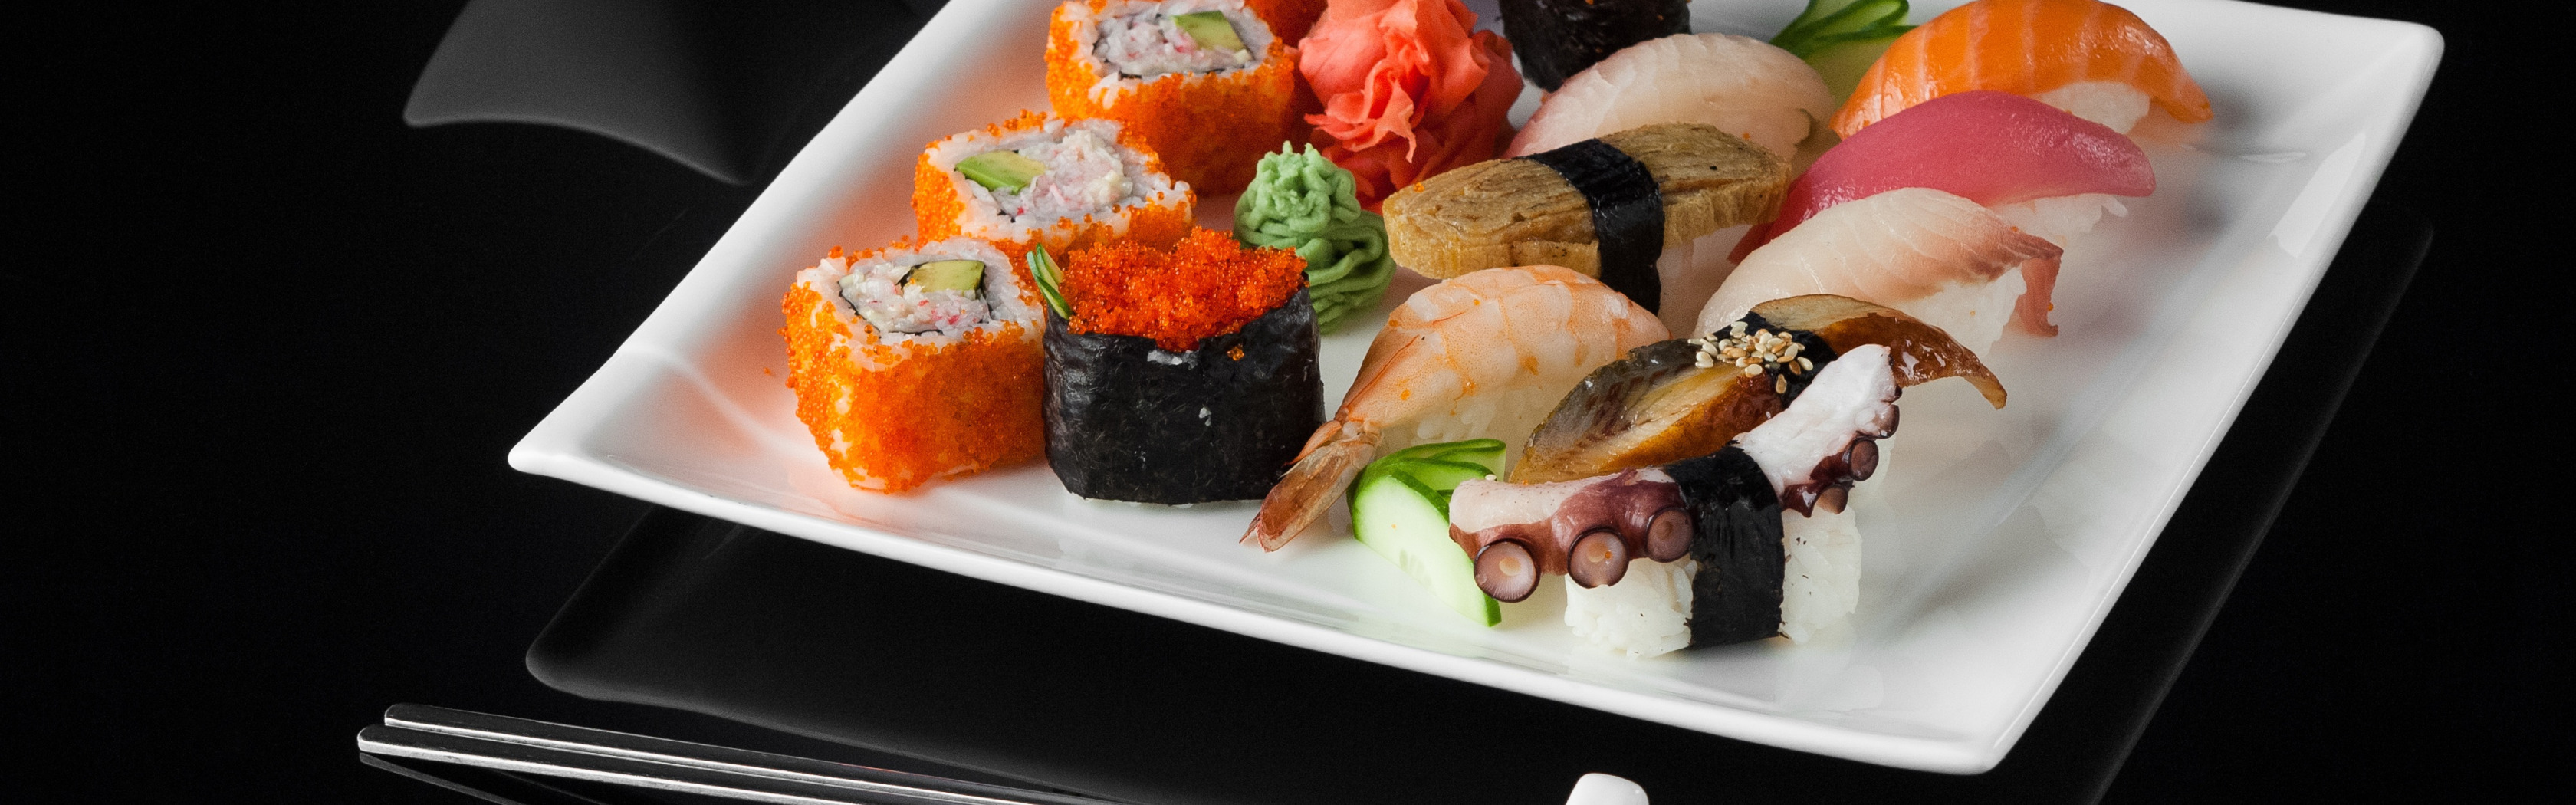 Самая высокая система суши. Суши и роллы. Японская кухня. Роллы фон. Роллы на черном фоне.